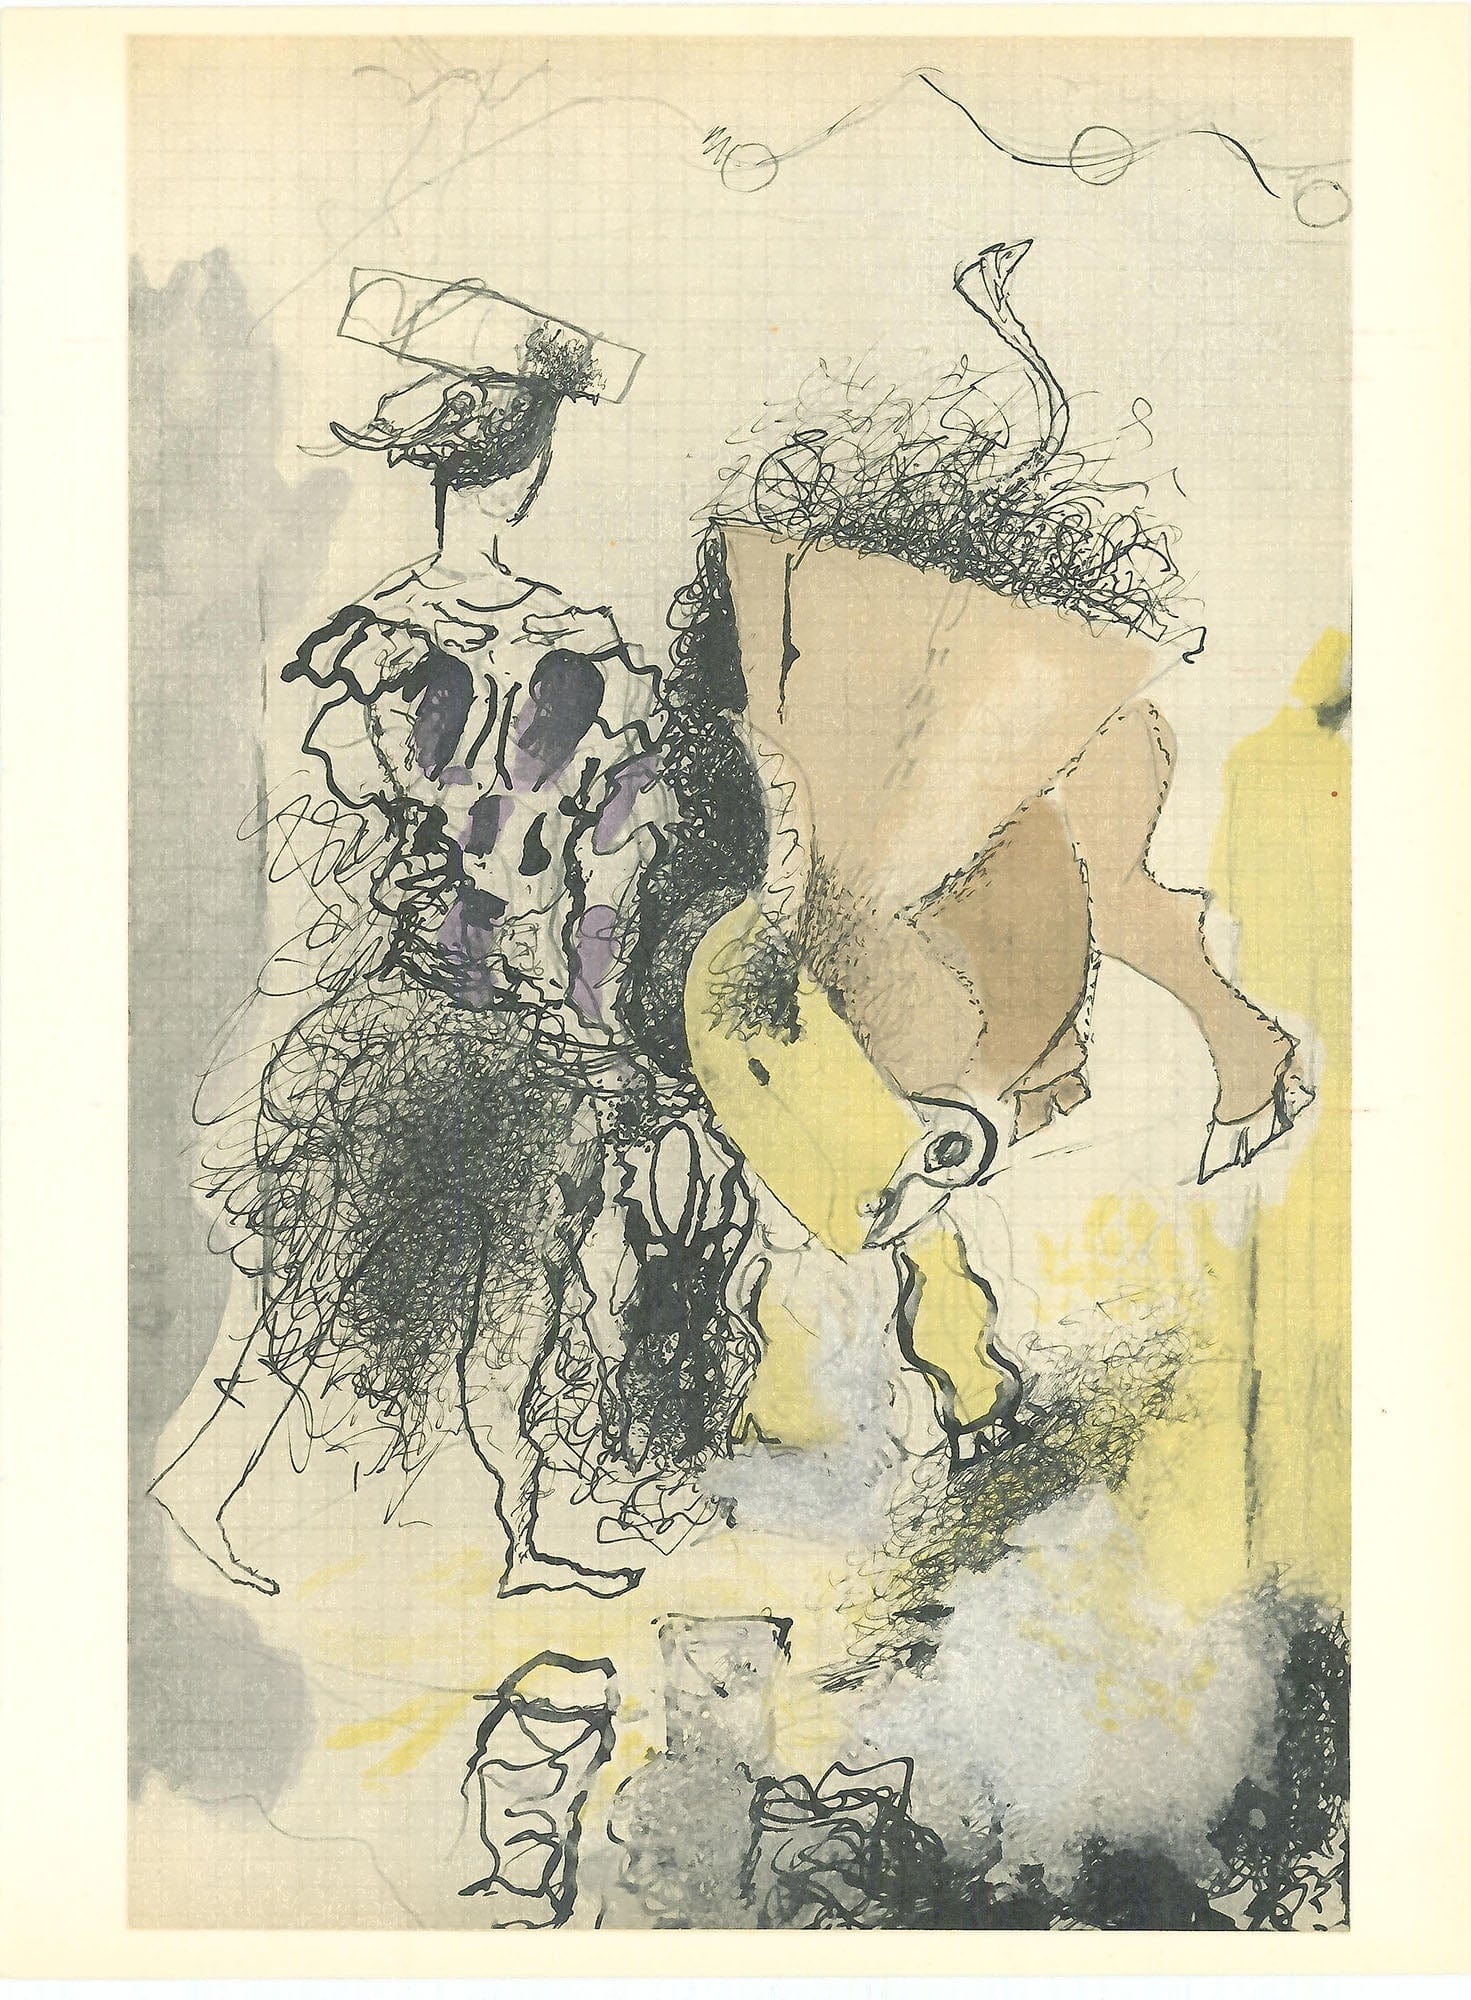 Georges Braque, "Untitled VIII" ZOOM Vol. 8 No. 31 ET 32 lithograph verve